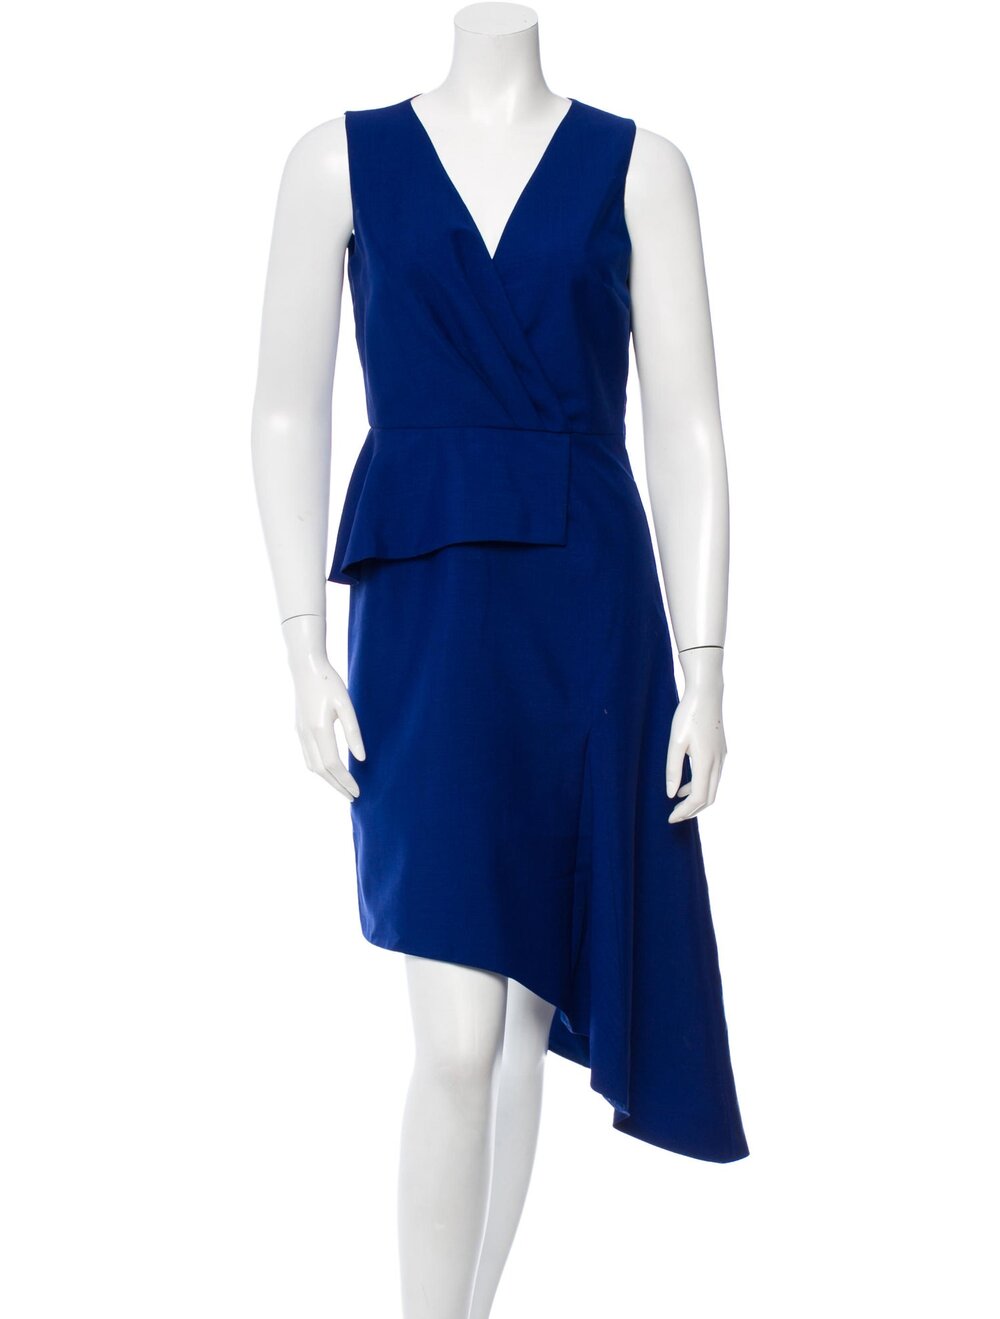 Christian Dior Sleeveless Peplum V-Neck Dress in Cobalt Blue — UFO No More